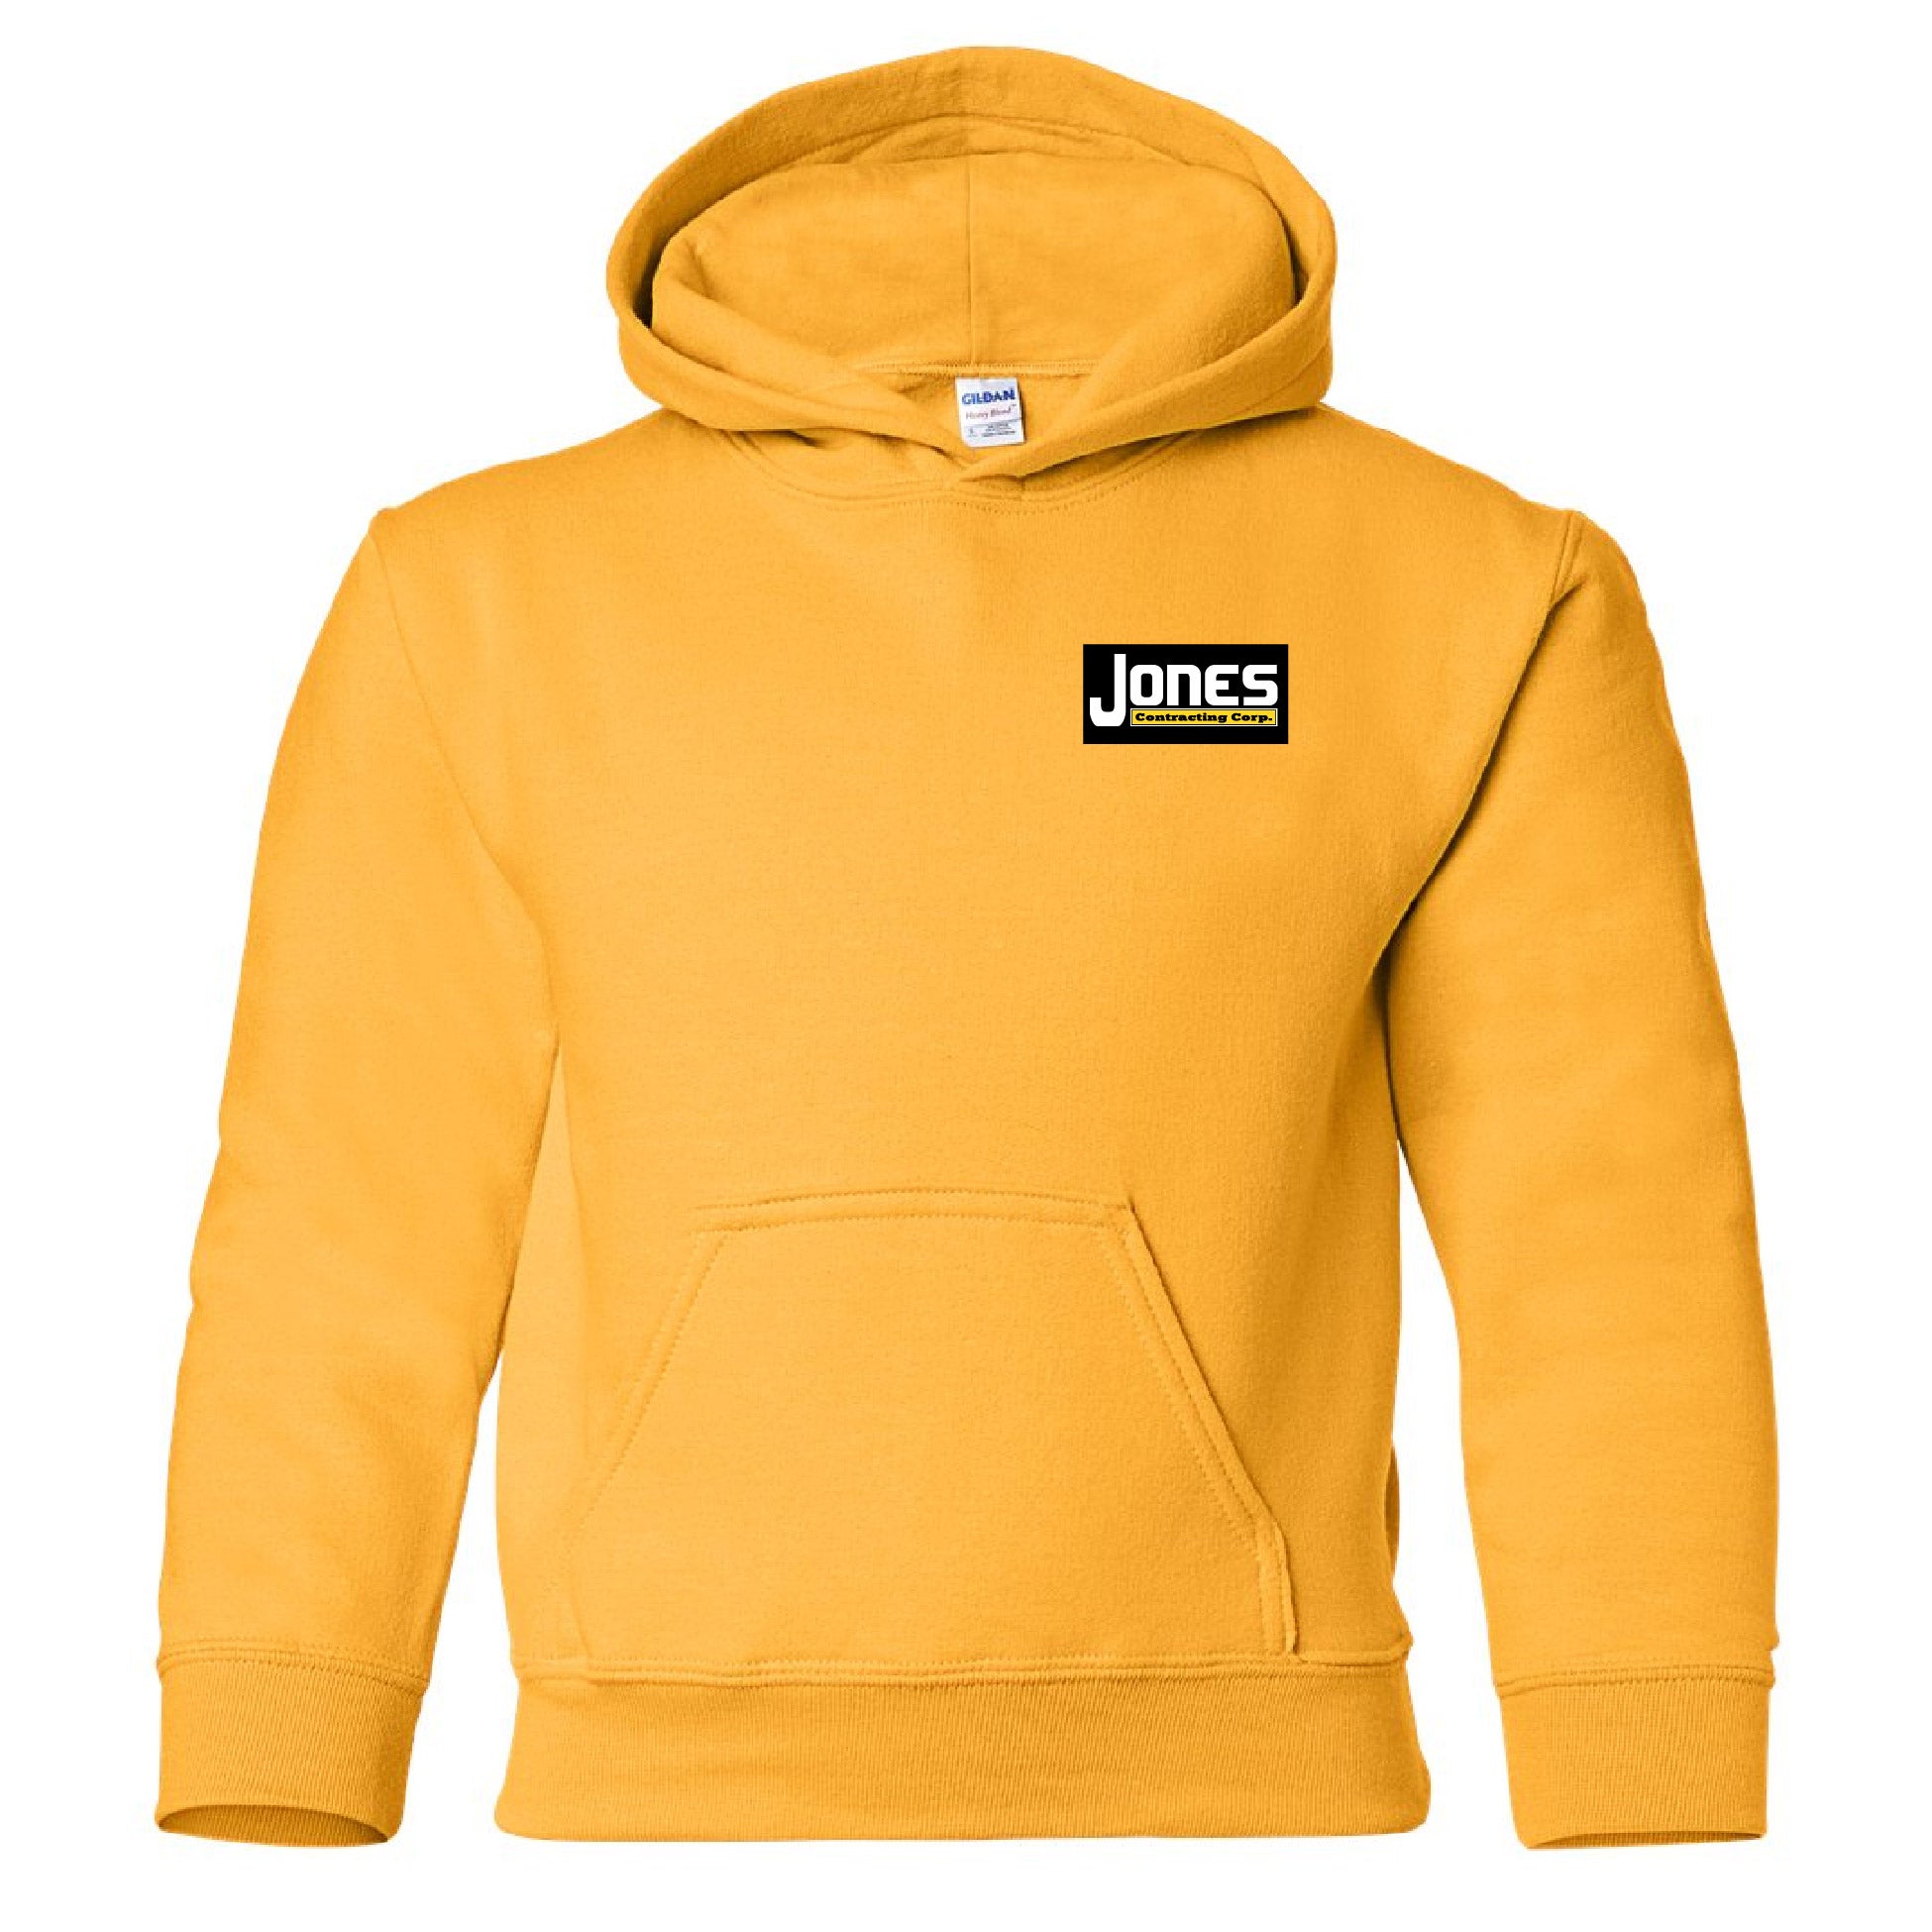 Jones Contracting Youth Hooded Sweatshirt